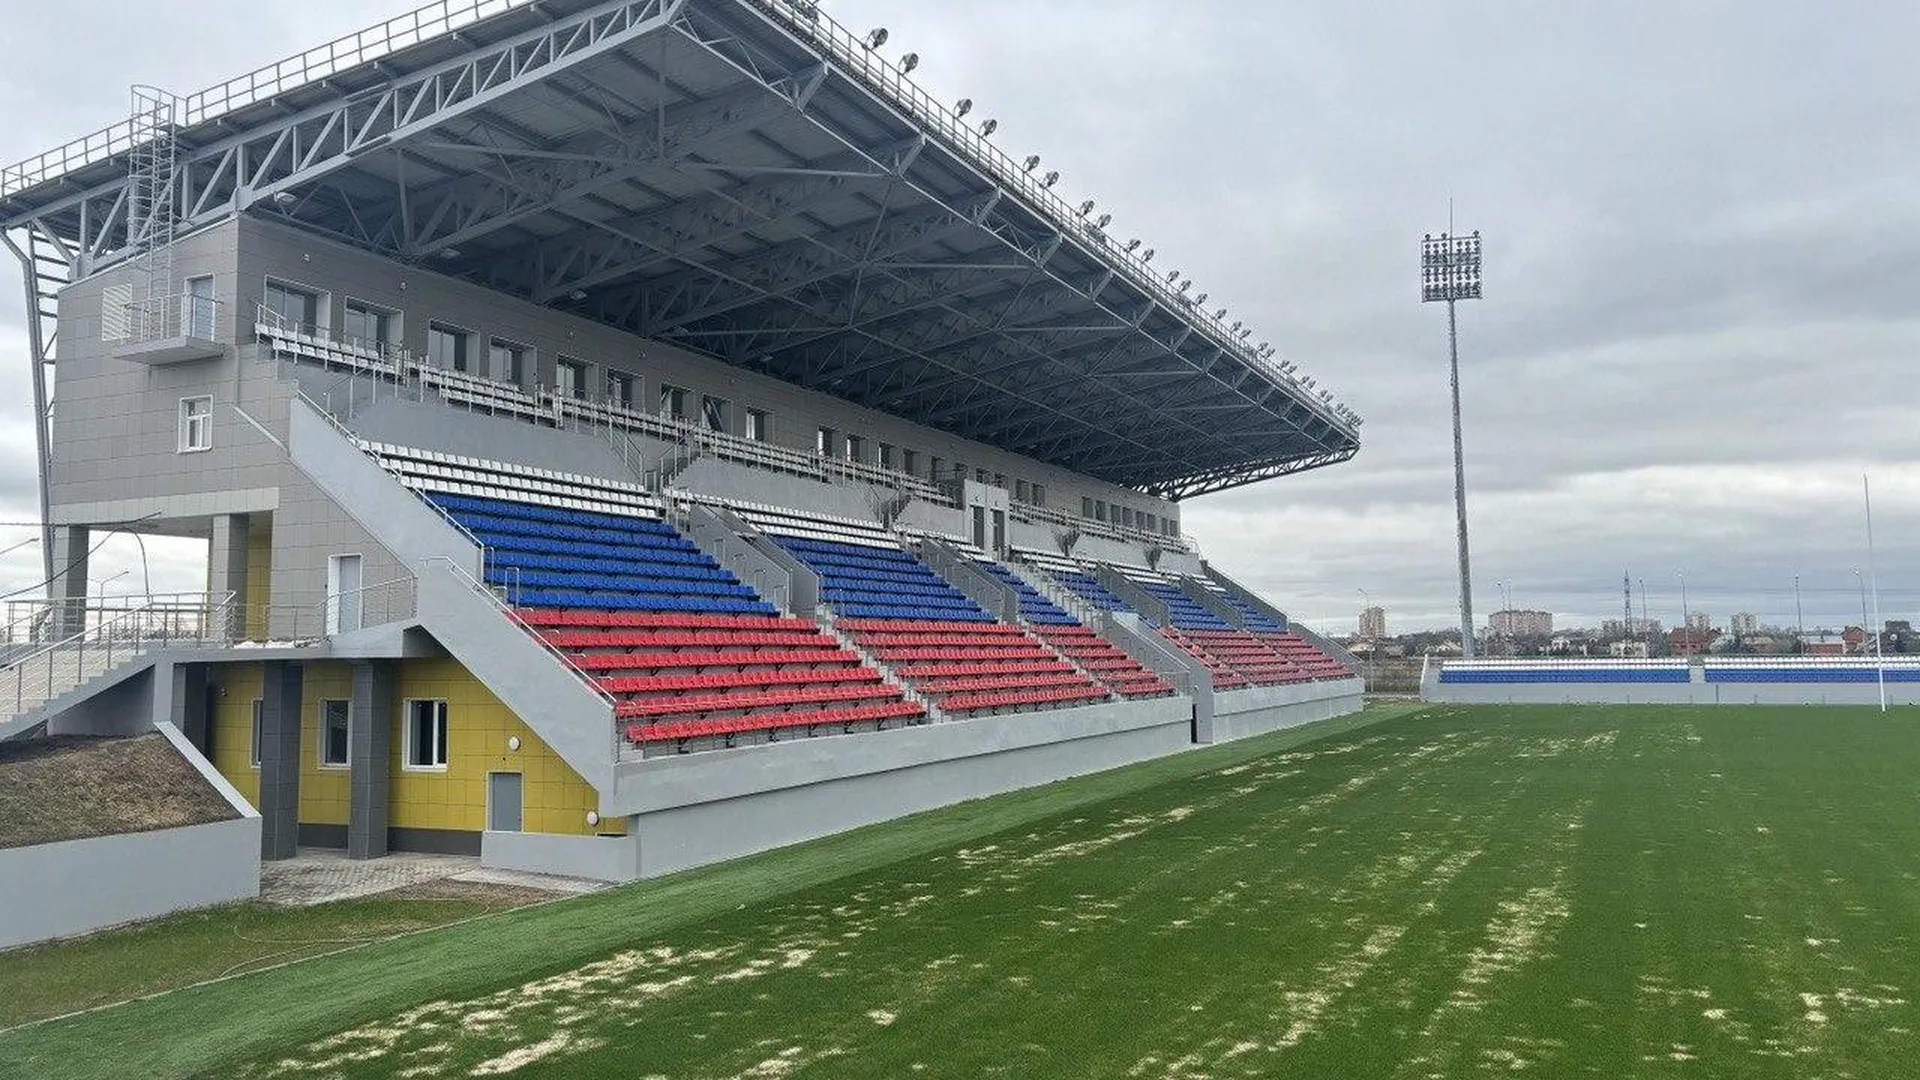 Уже летом в Щелково будет достроен стадион для проведения соревнований по регби